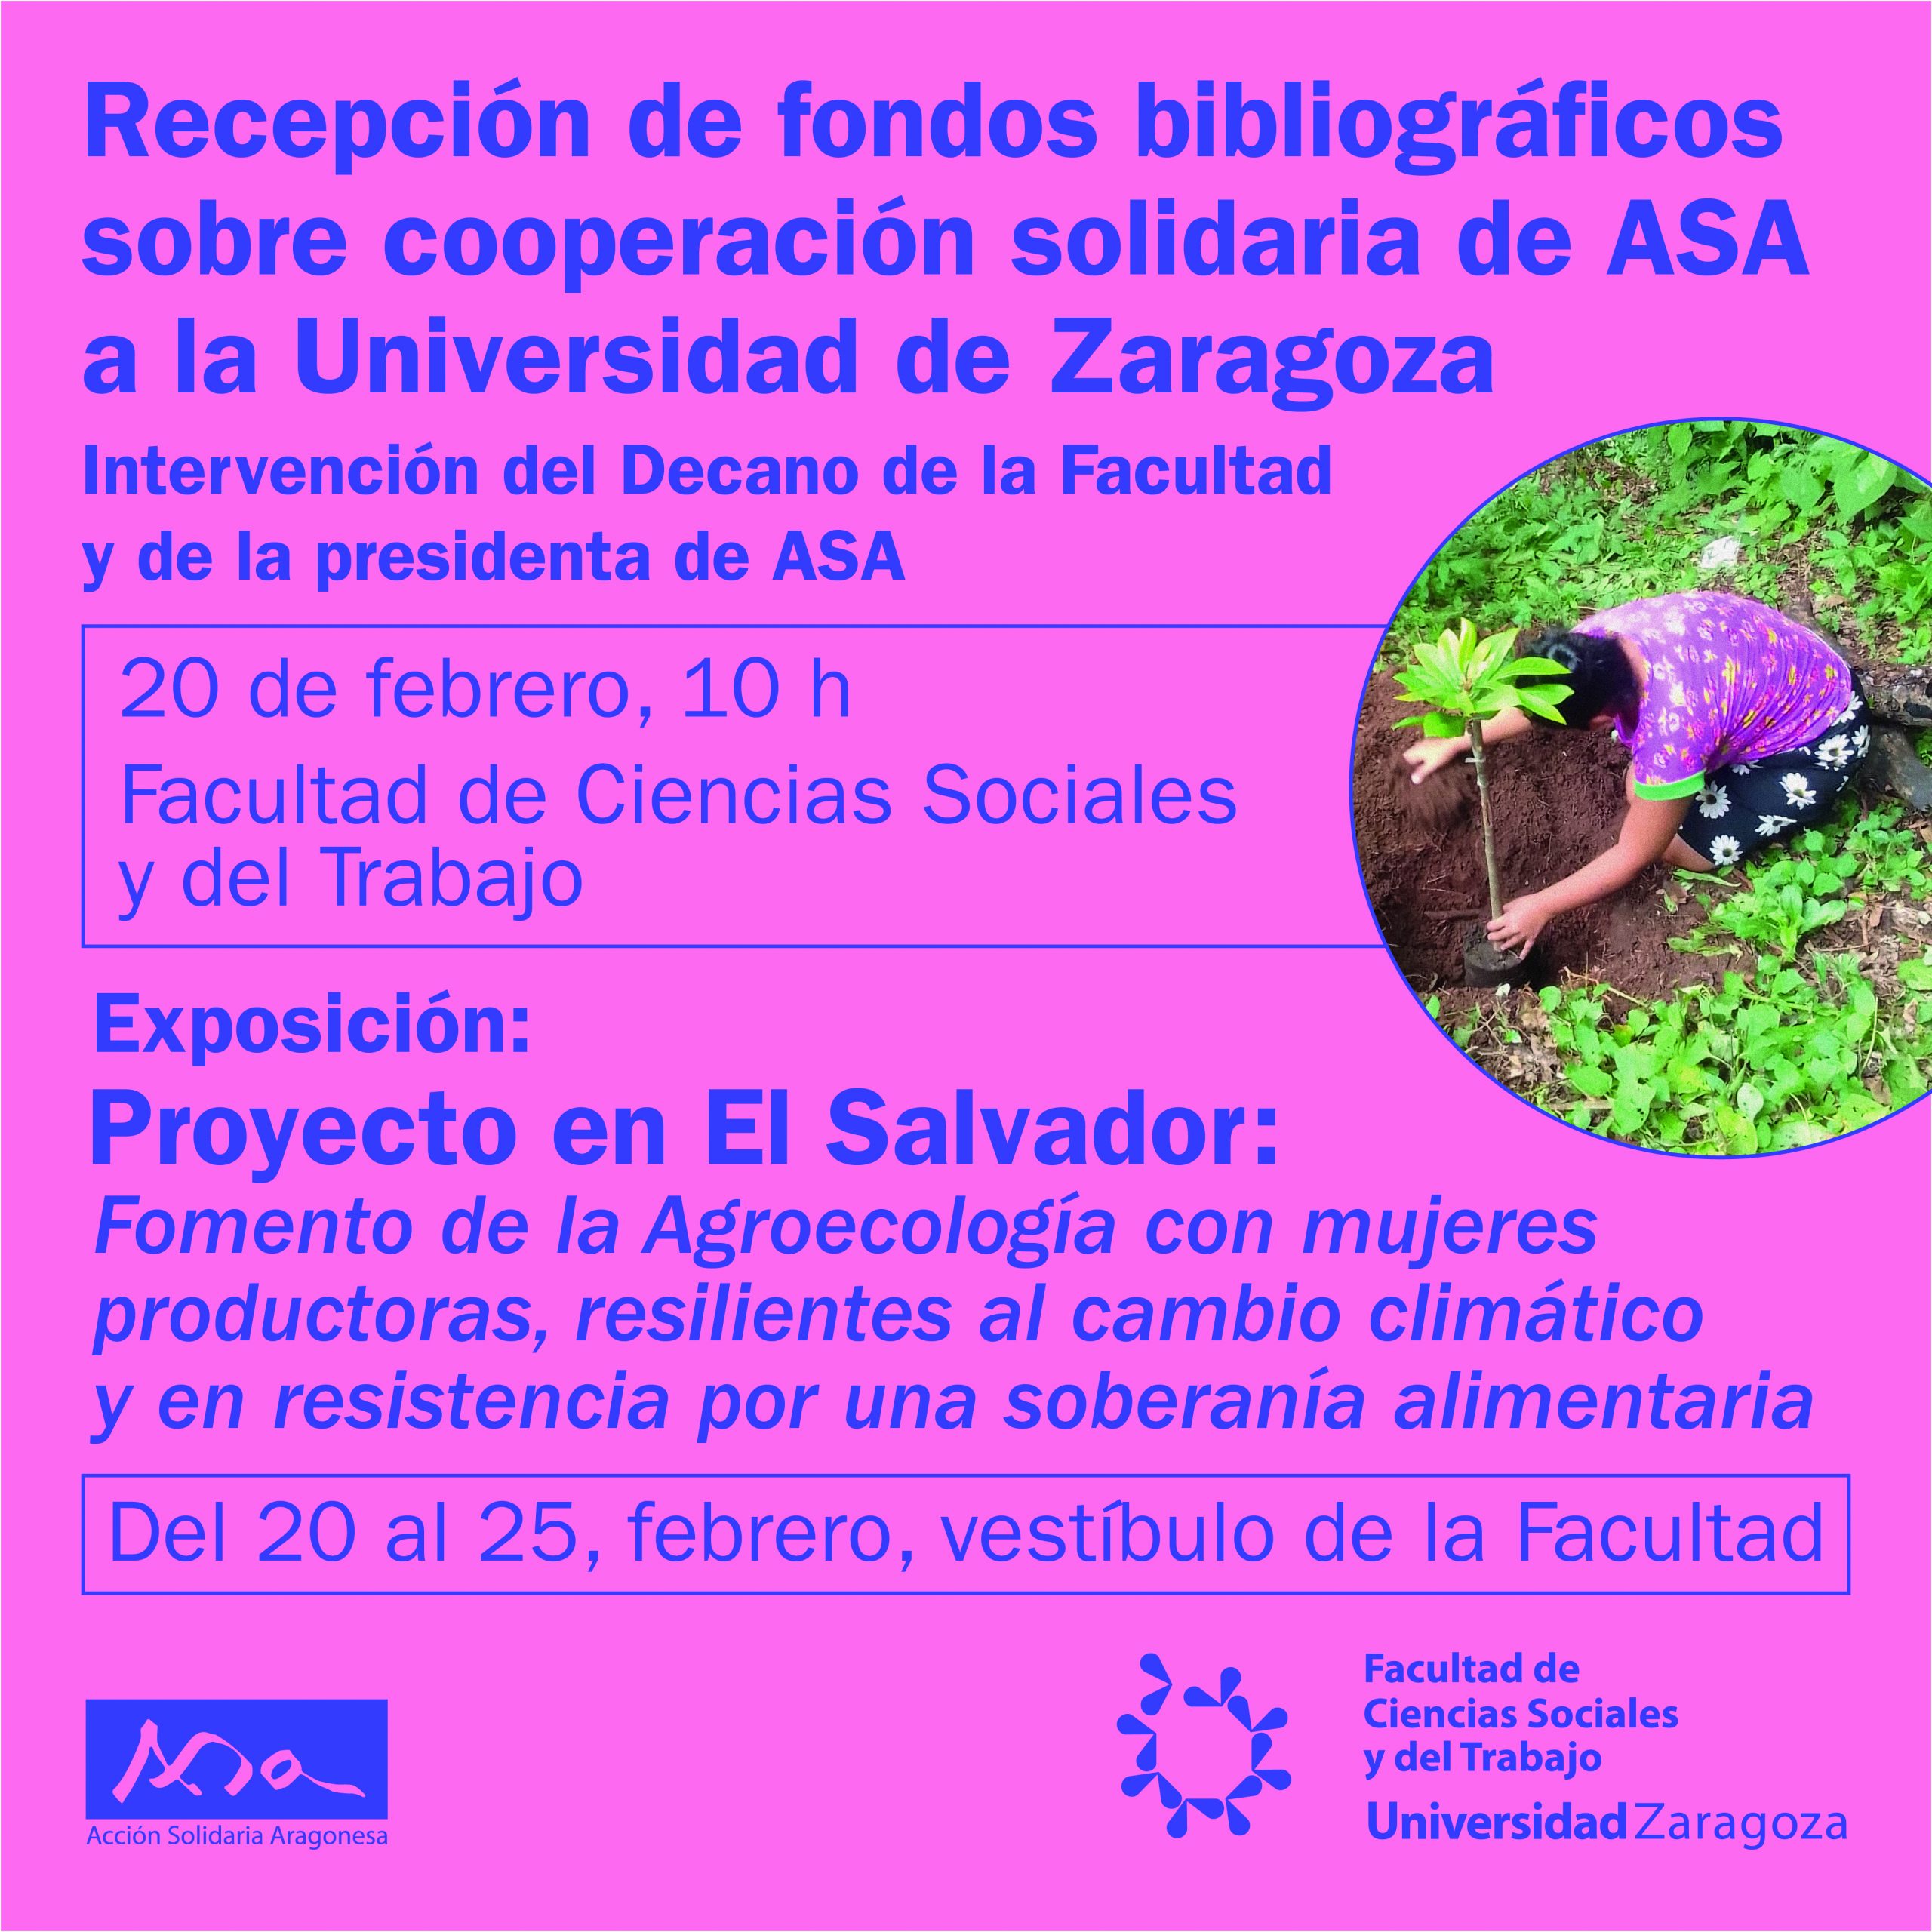 Exposición: Proyecto en El Salvador "Fomento de la Agroecología con mujeres"